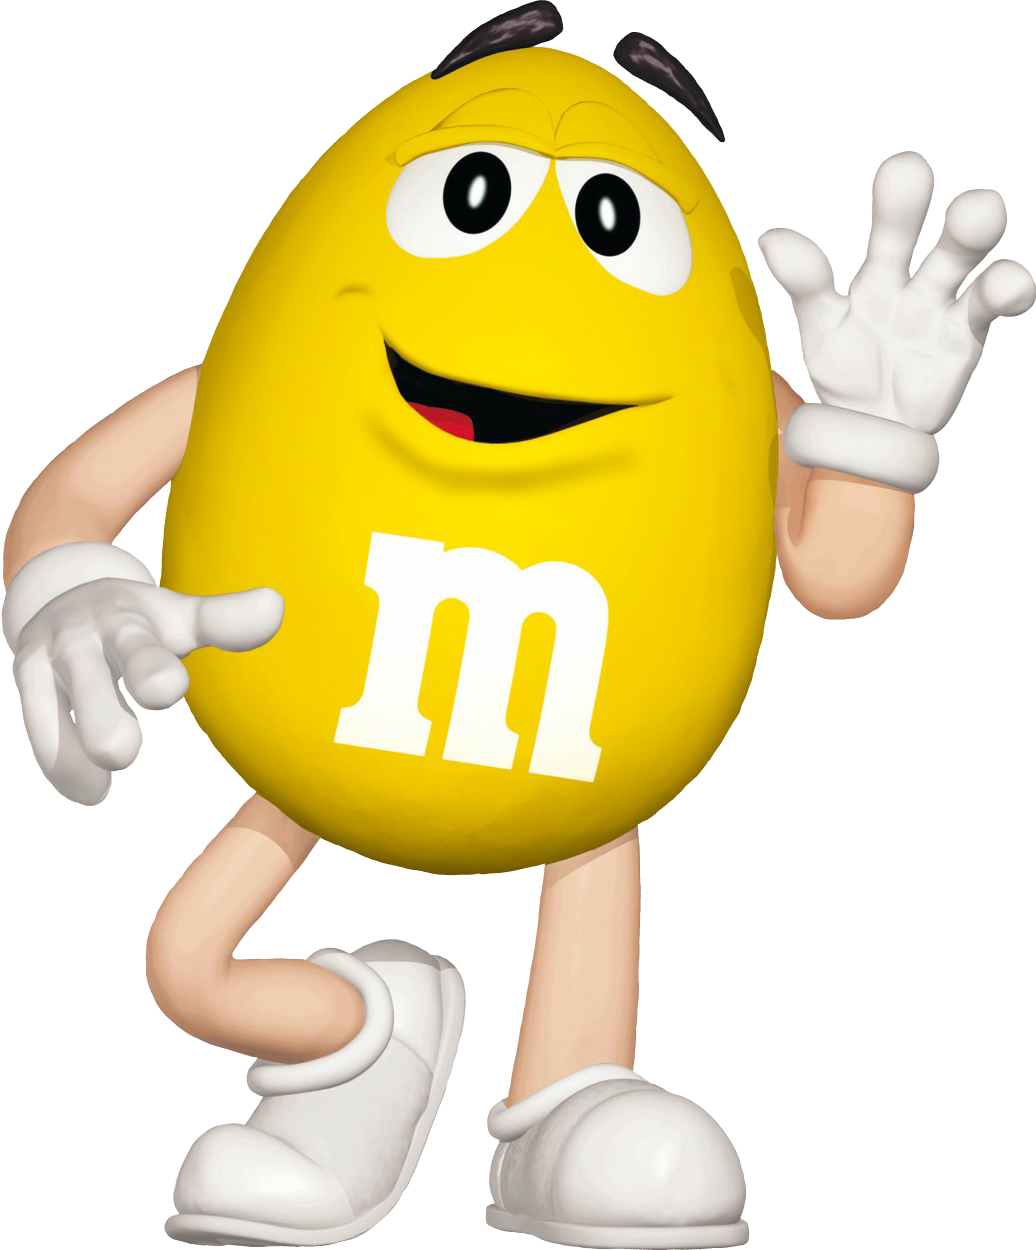 peanut m&m mascot